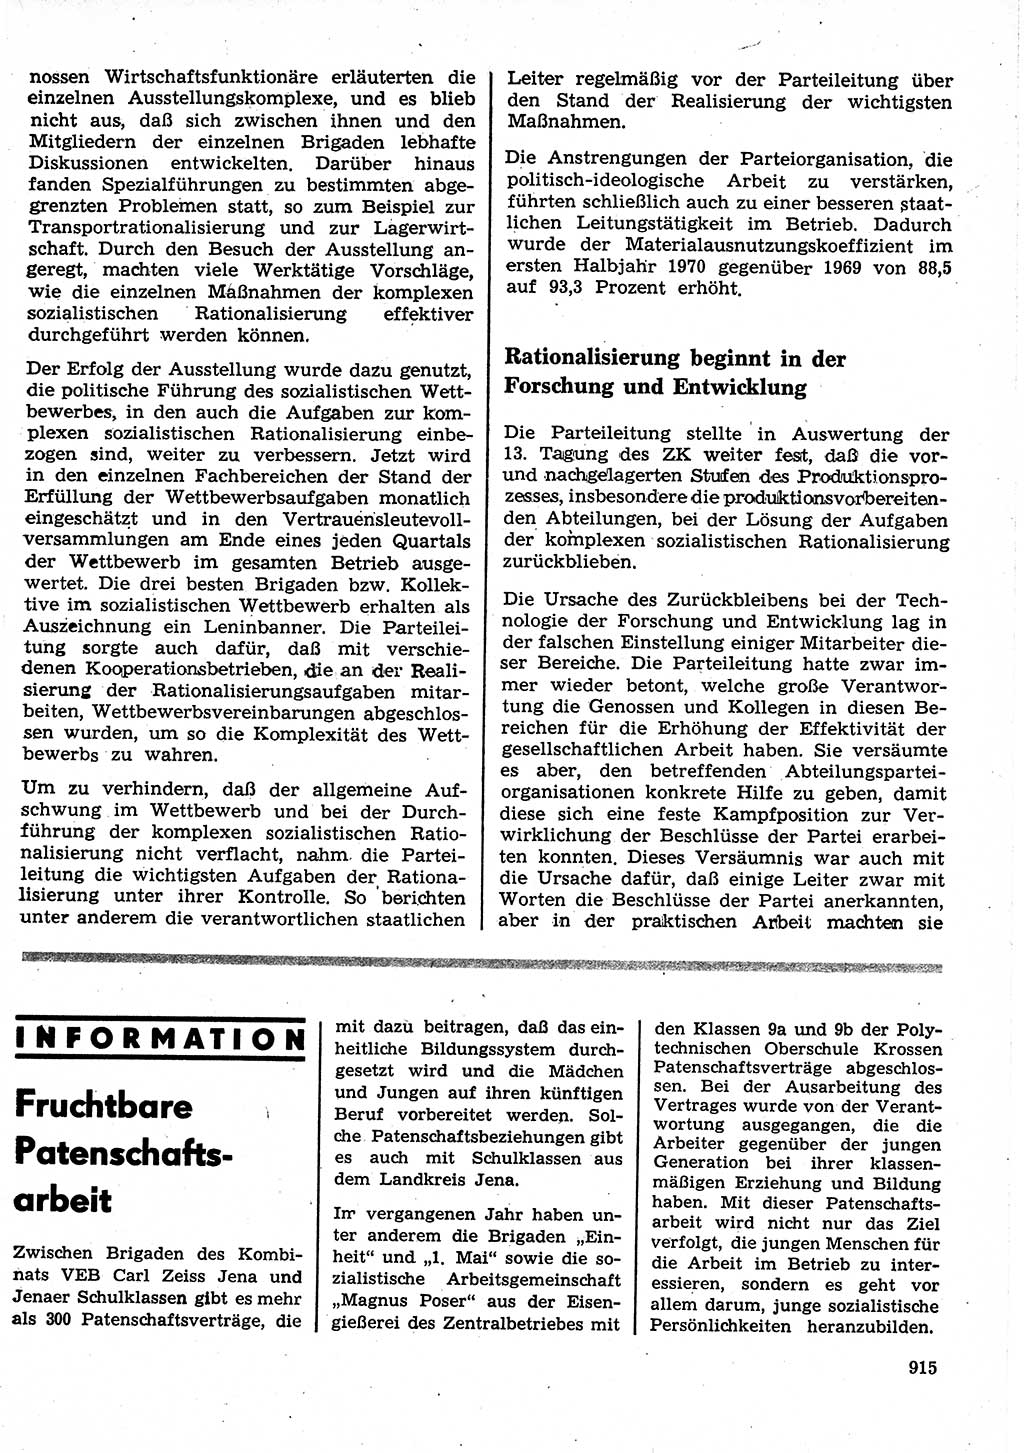 Neuer Weg (NW), Organ des Zentralkomitees (ZK) der SED (Sozialistische Einheitspartei Deutschlands) für Fragen des Parteilebens, 25. Jahrgang [Deutsche Demokratische Republik (DDR)] 1970, Seite 915 (NW ZK SED DDR 1970, S. 915)